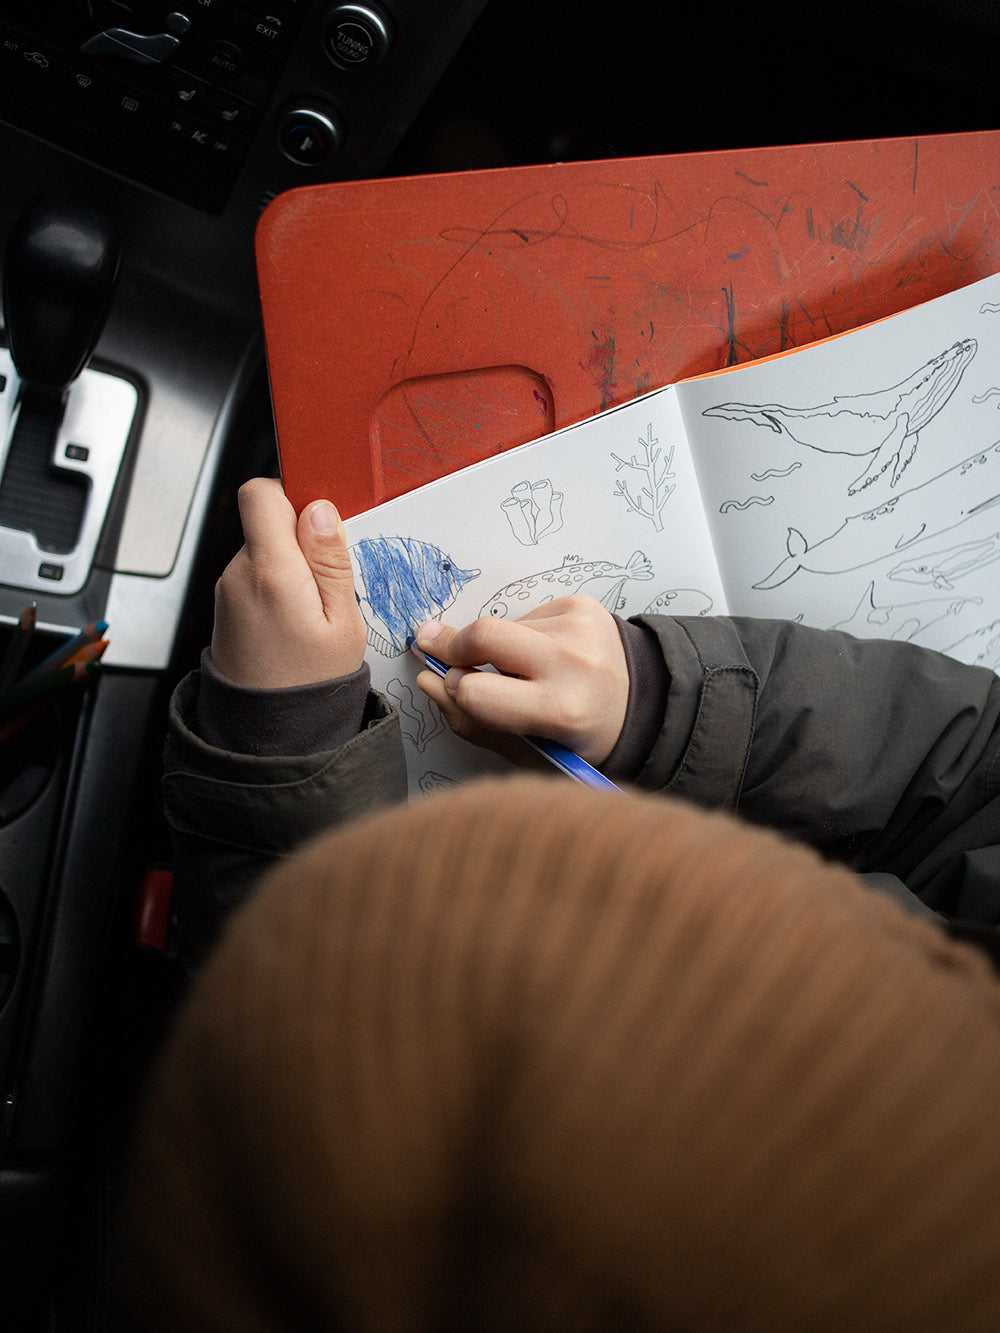 Kind malt im Auto einen Fisch aus mit einem blauen stift im malbuch krummtier to go